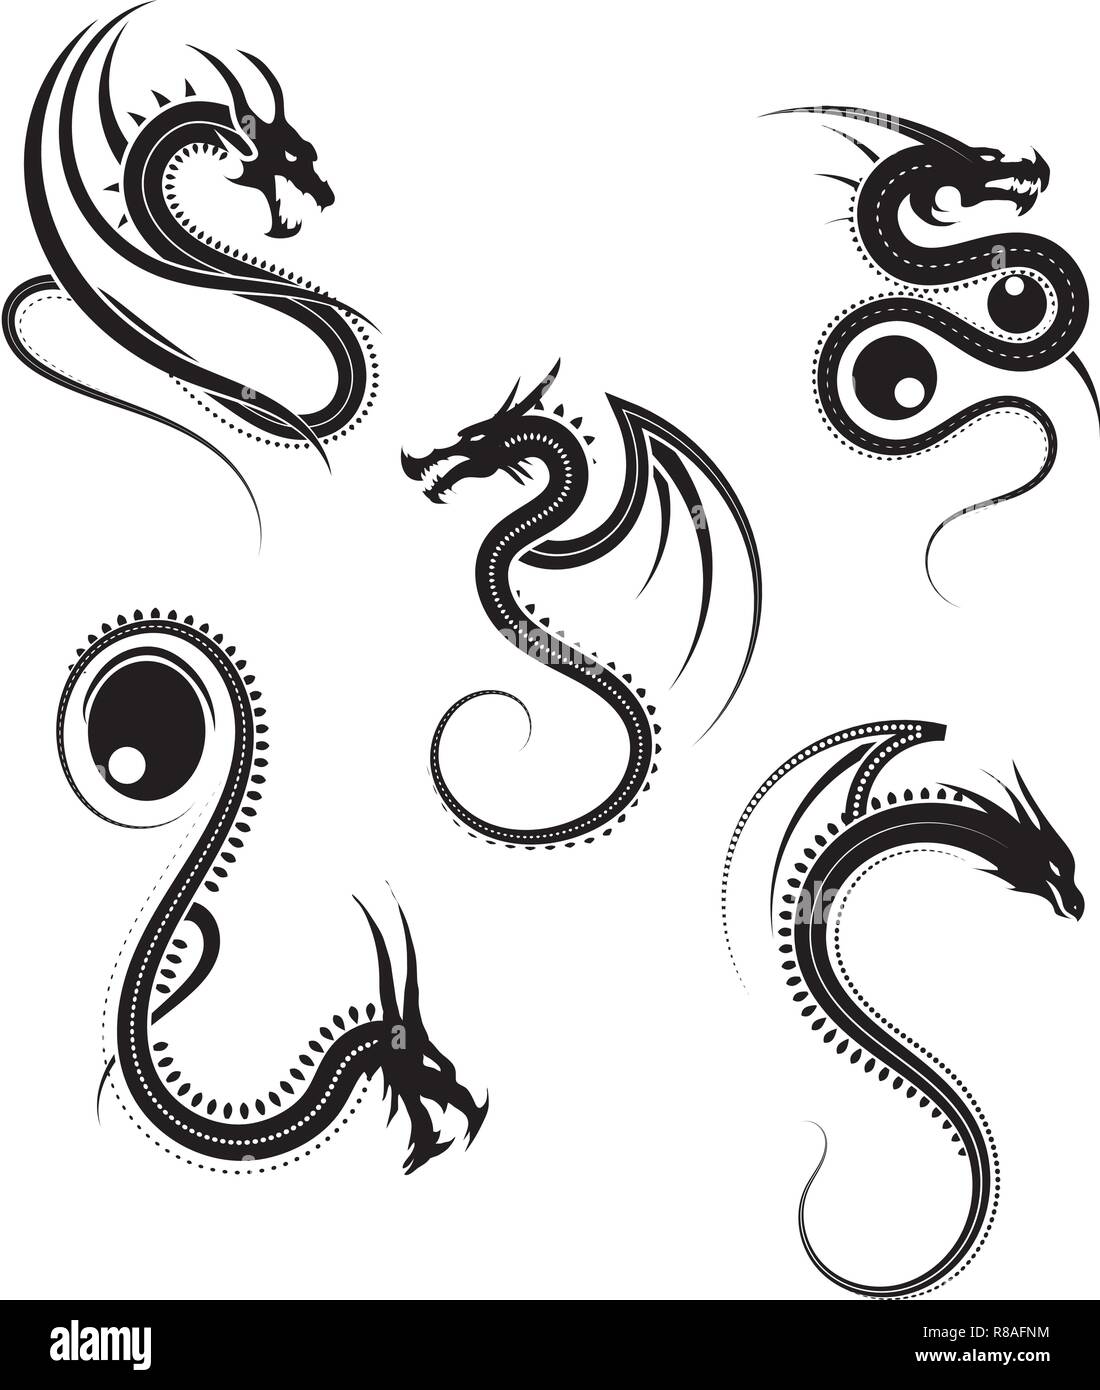 Vector illustration, jeu de dragon tribal ronde dessins, graphiques en noir et blanc Illustration de Vecteur